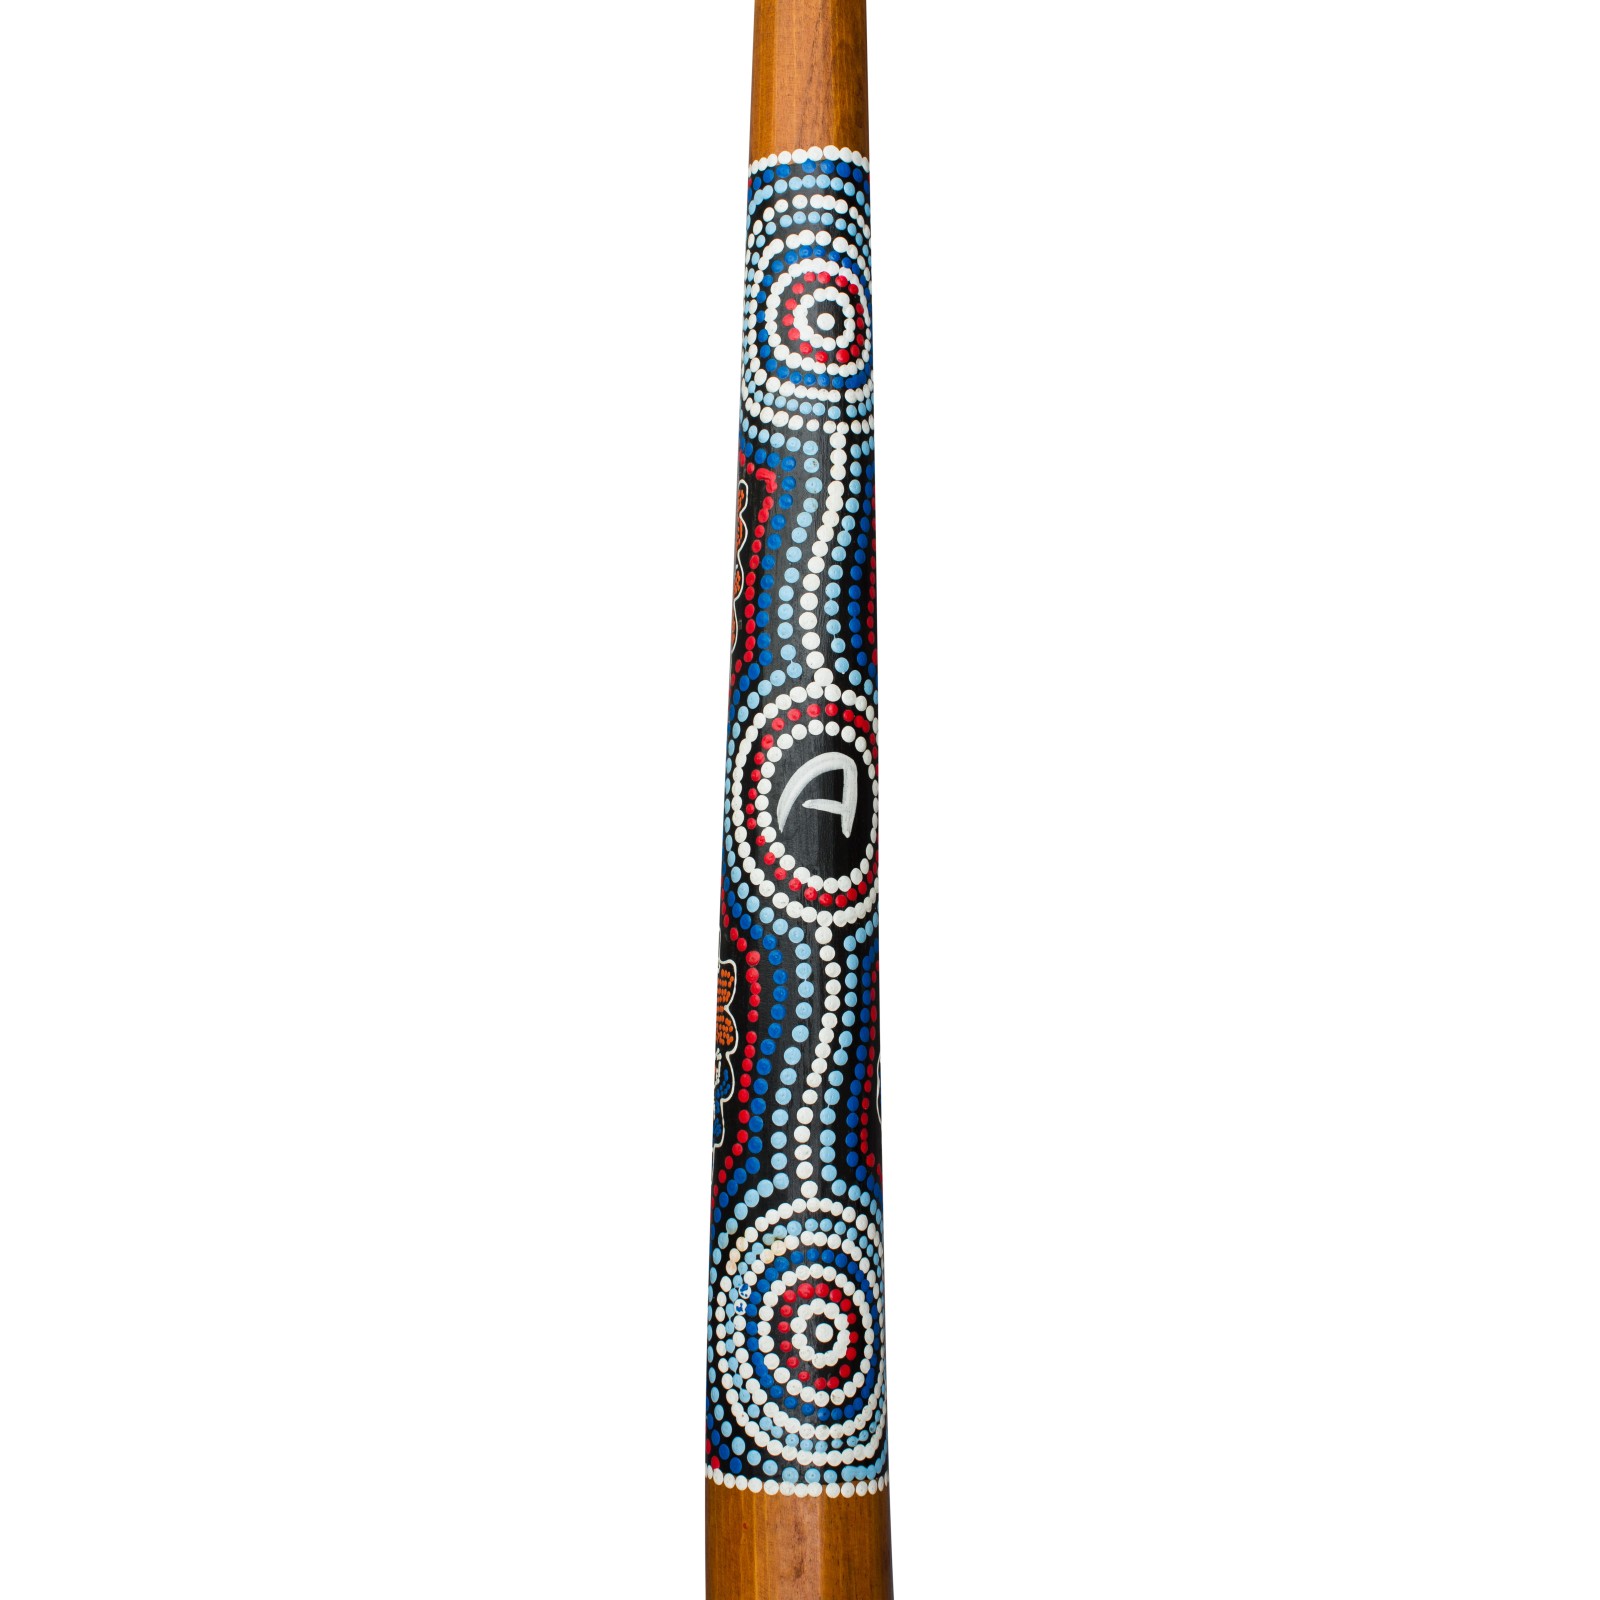 Wooden didgeridoo painted